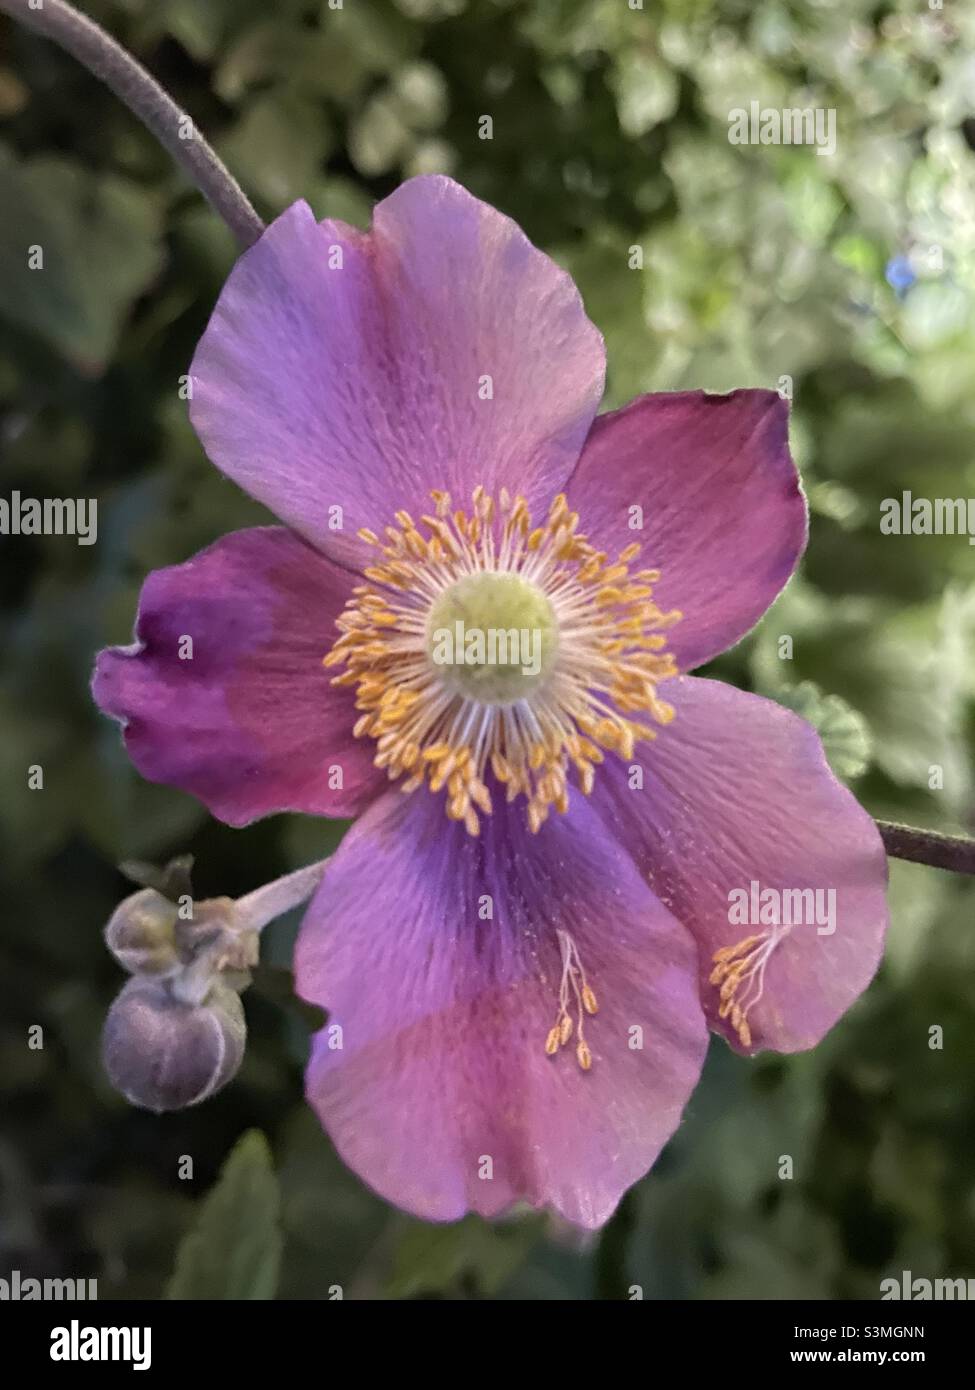 Queen purple bloom in details Stock Photo